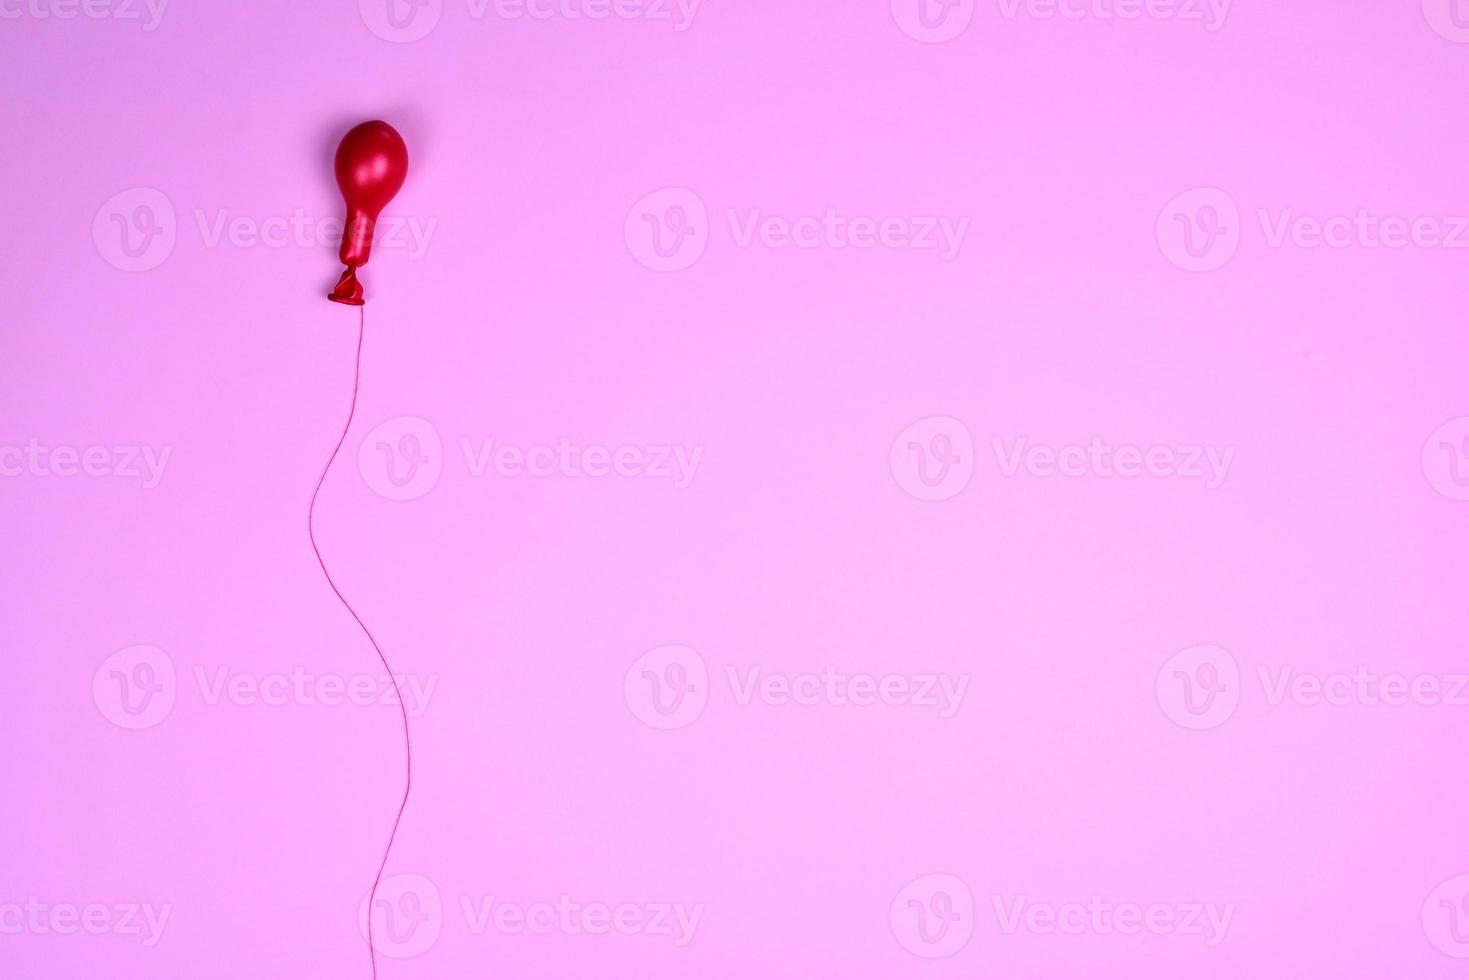 ballon à air rouge sur une ficelle rouge photo